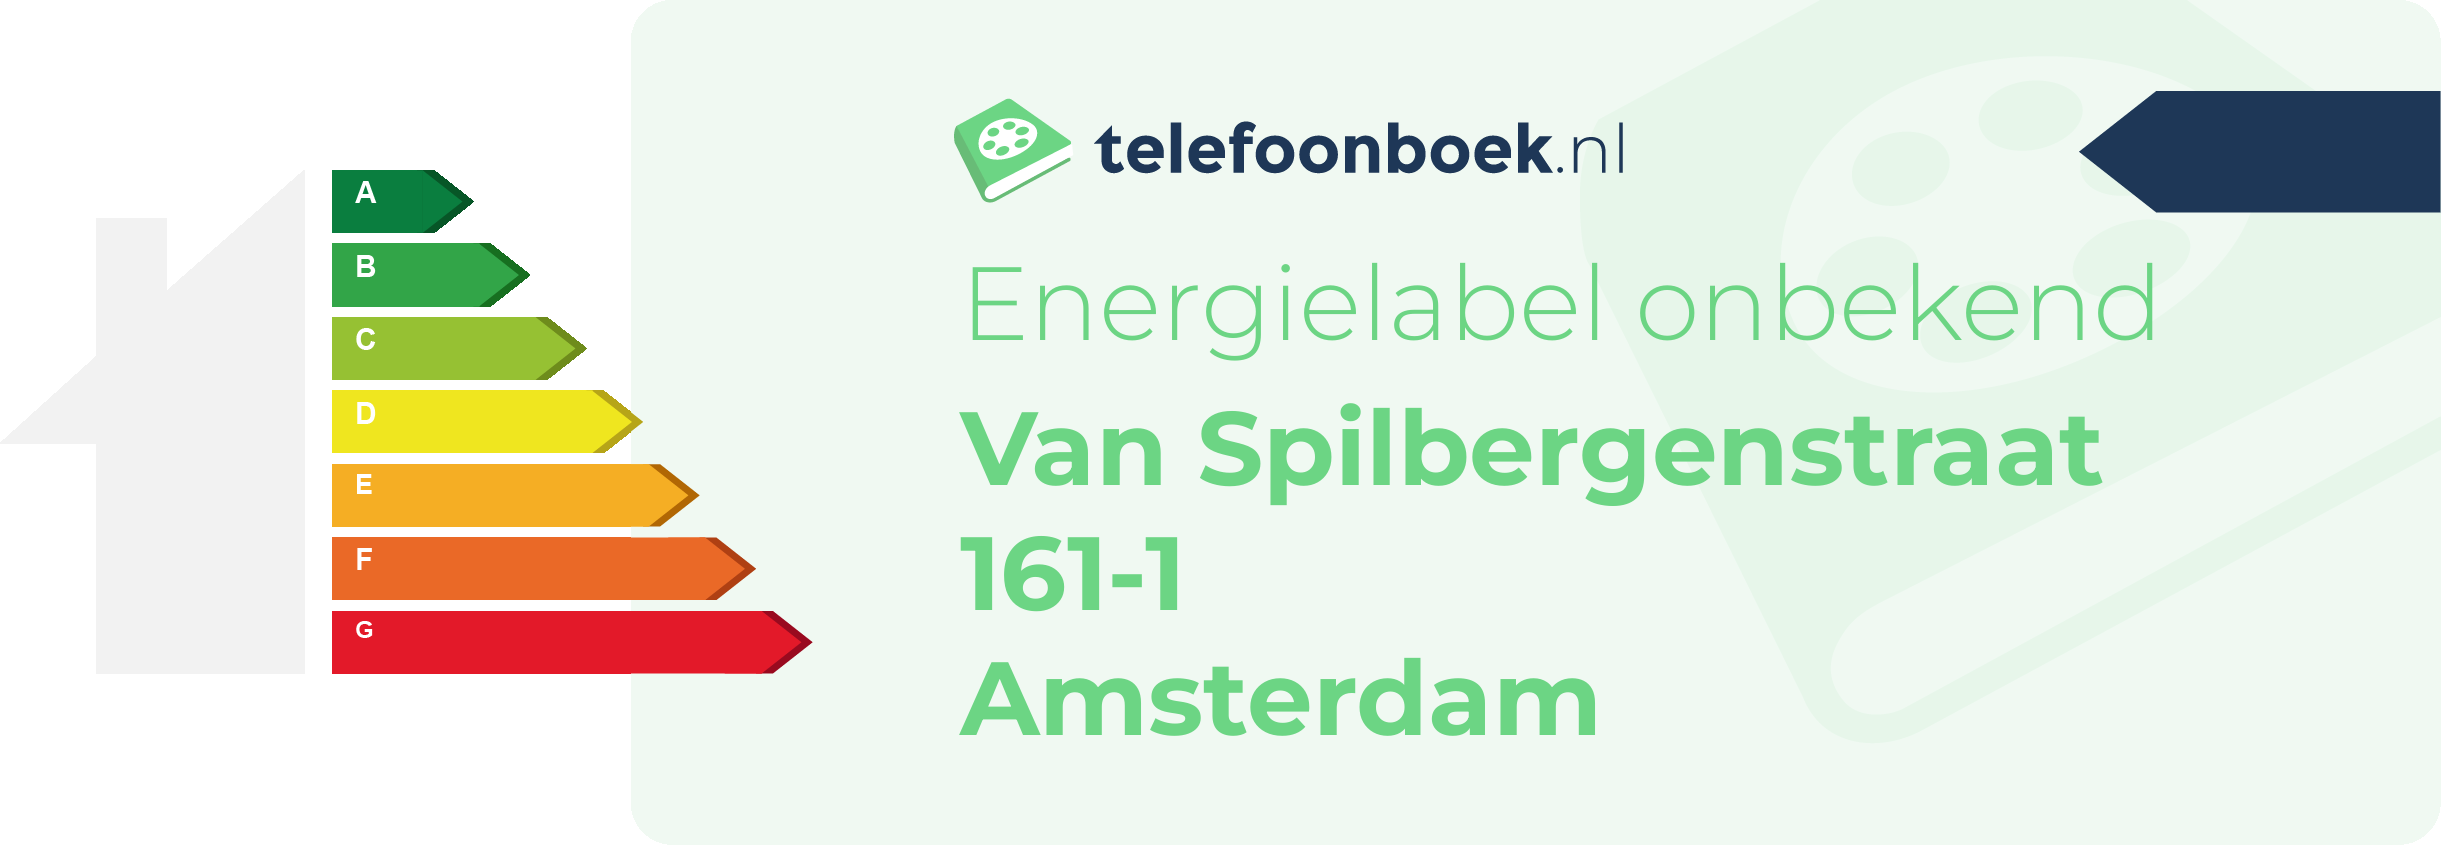 Energielabel Van Spilbergenstraat 161-1 Amsterdam